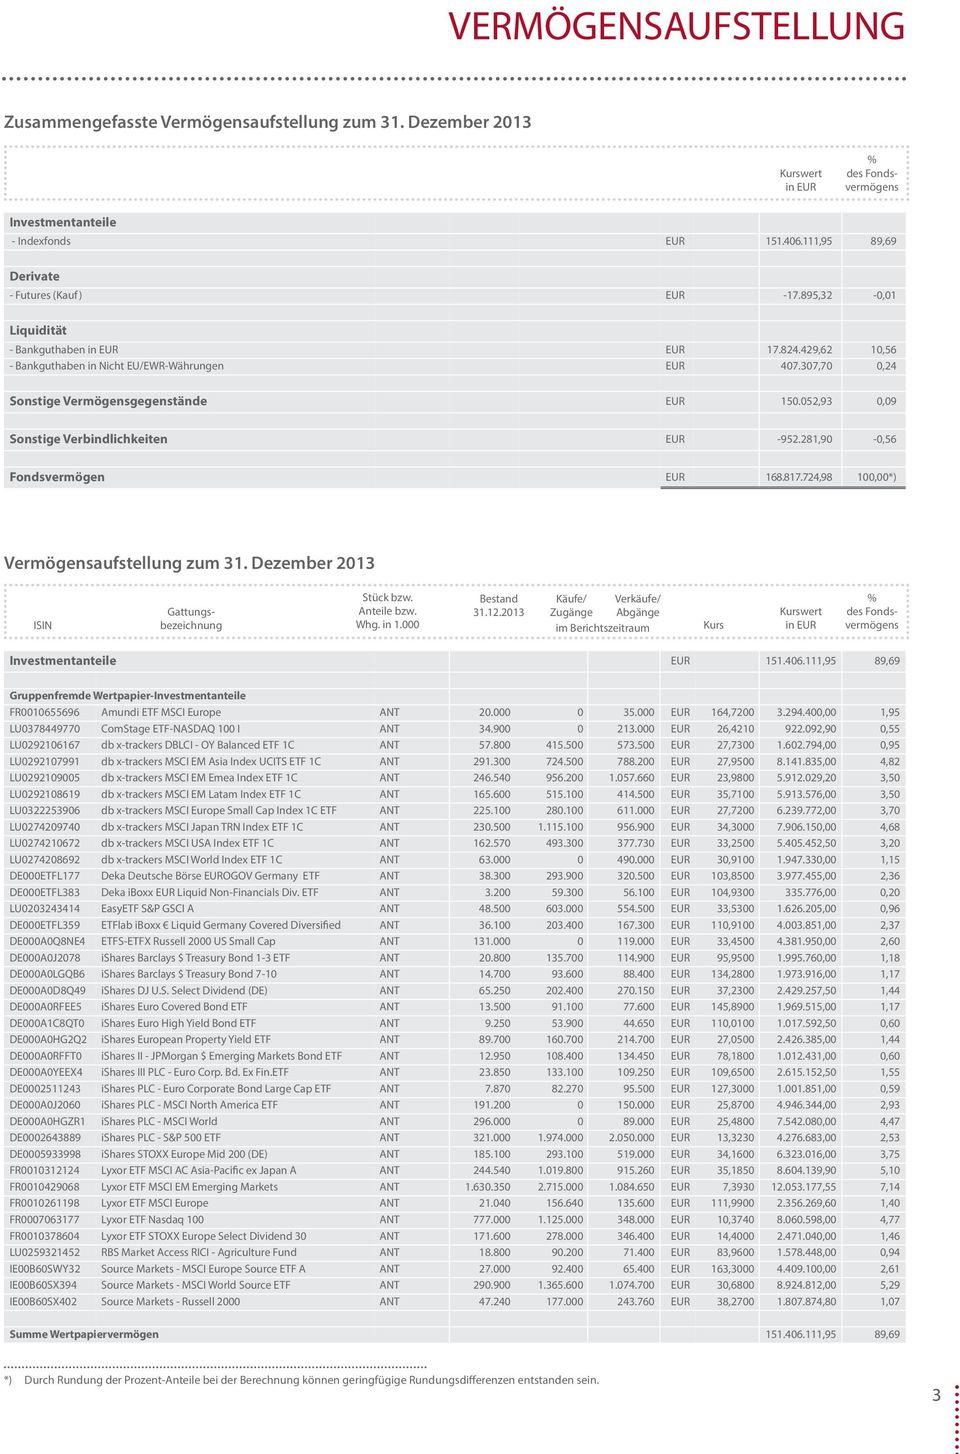 281,90-0,56 Fondsvermögen 168.817.724,98 100,00*) Vermögensaufstellung zum 31. Dezember 2013 isin % des fondsvermögens Gattungsbezeichnung stück bzw. anteile bzw. Whg. in 1.000 bestand 31.12.